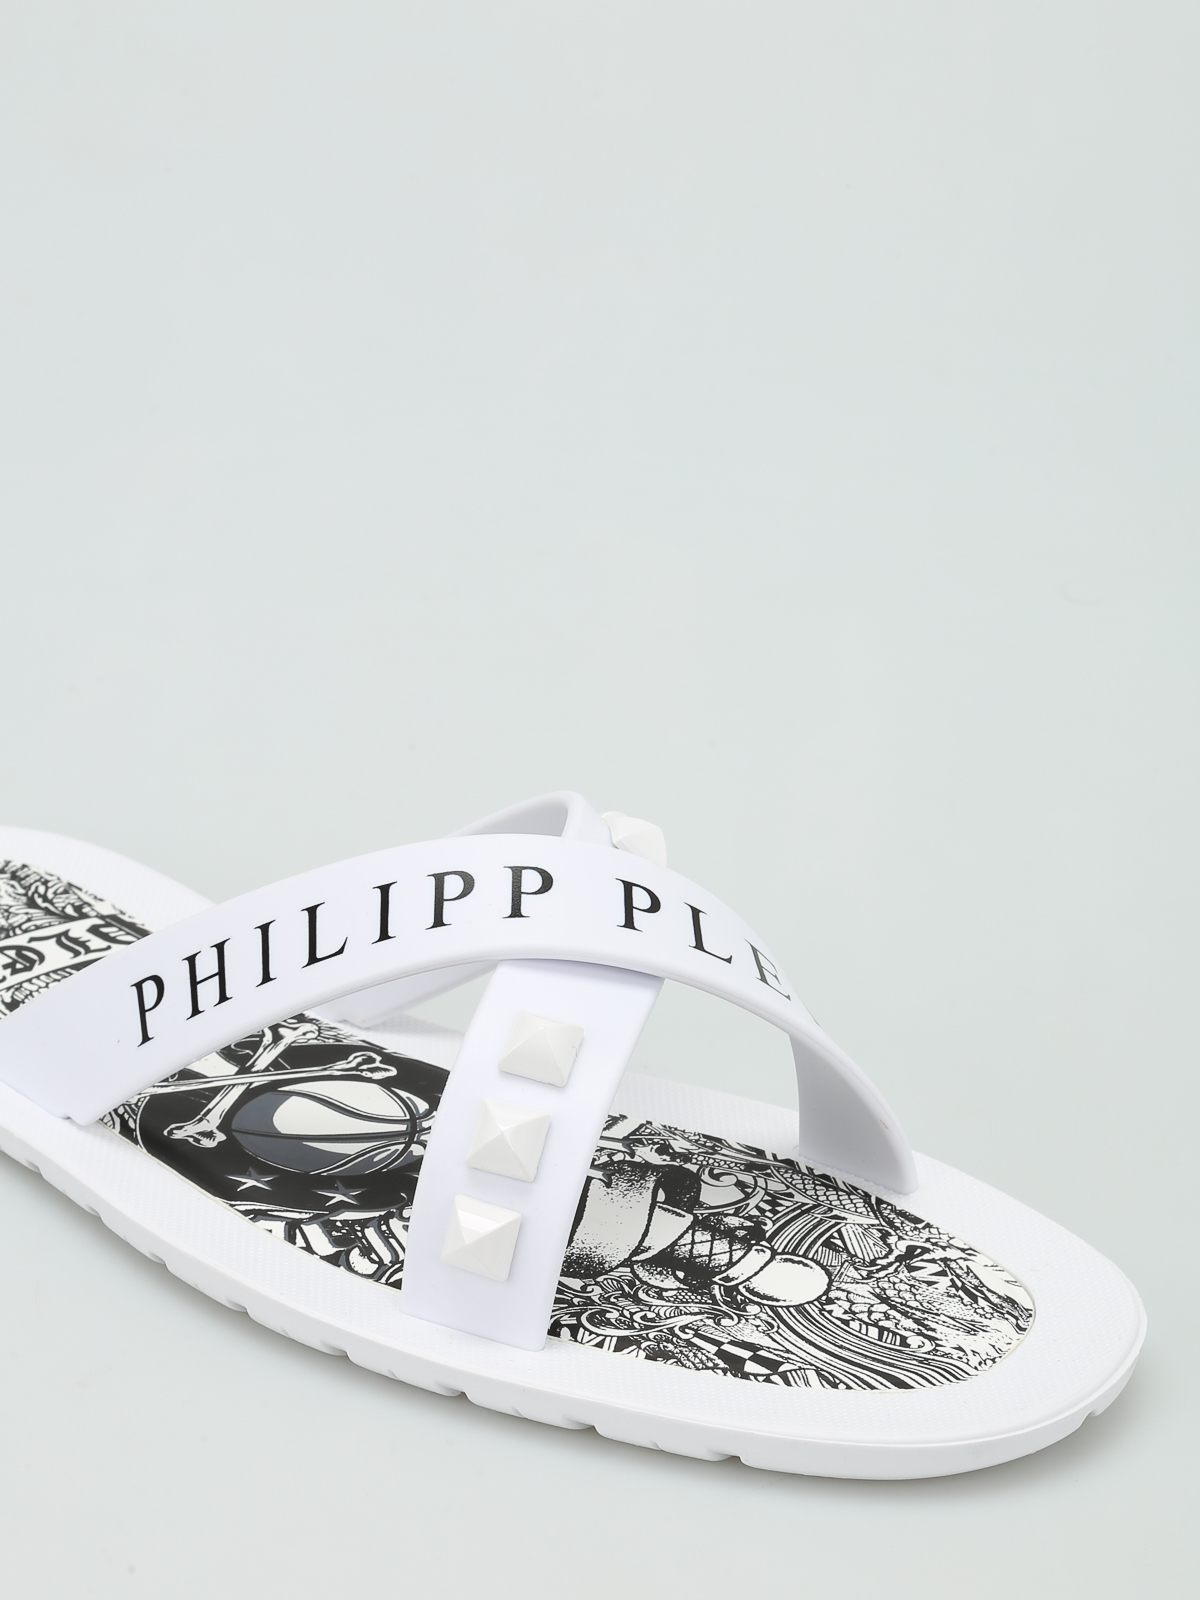 gemakkelijk Vervagen Zeeman Sandals Philipp Plein - Bangor rubber slippers - MSA0018PXV025N01K